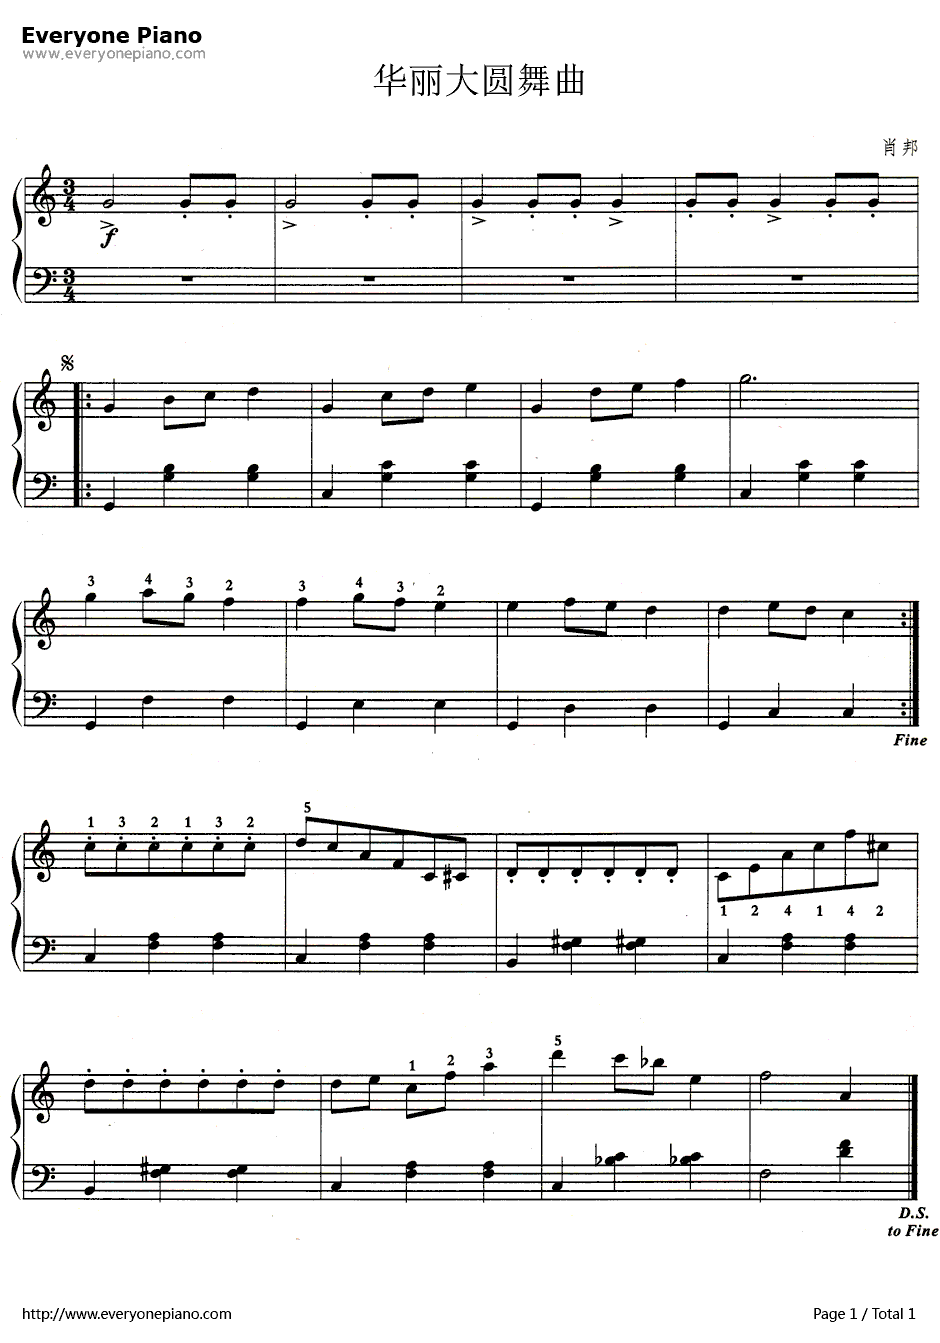 华丽大圆舞曲钢琴谱-肖邦-简化版1